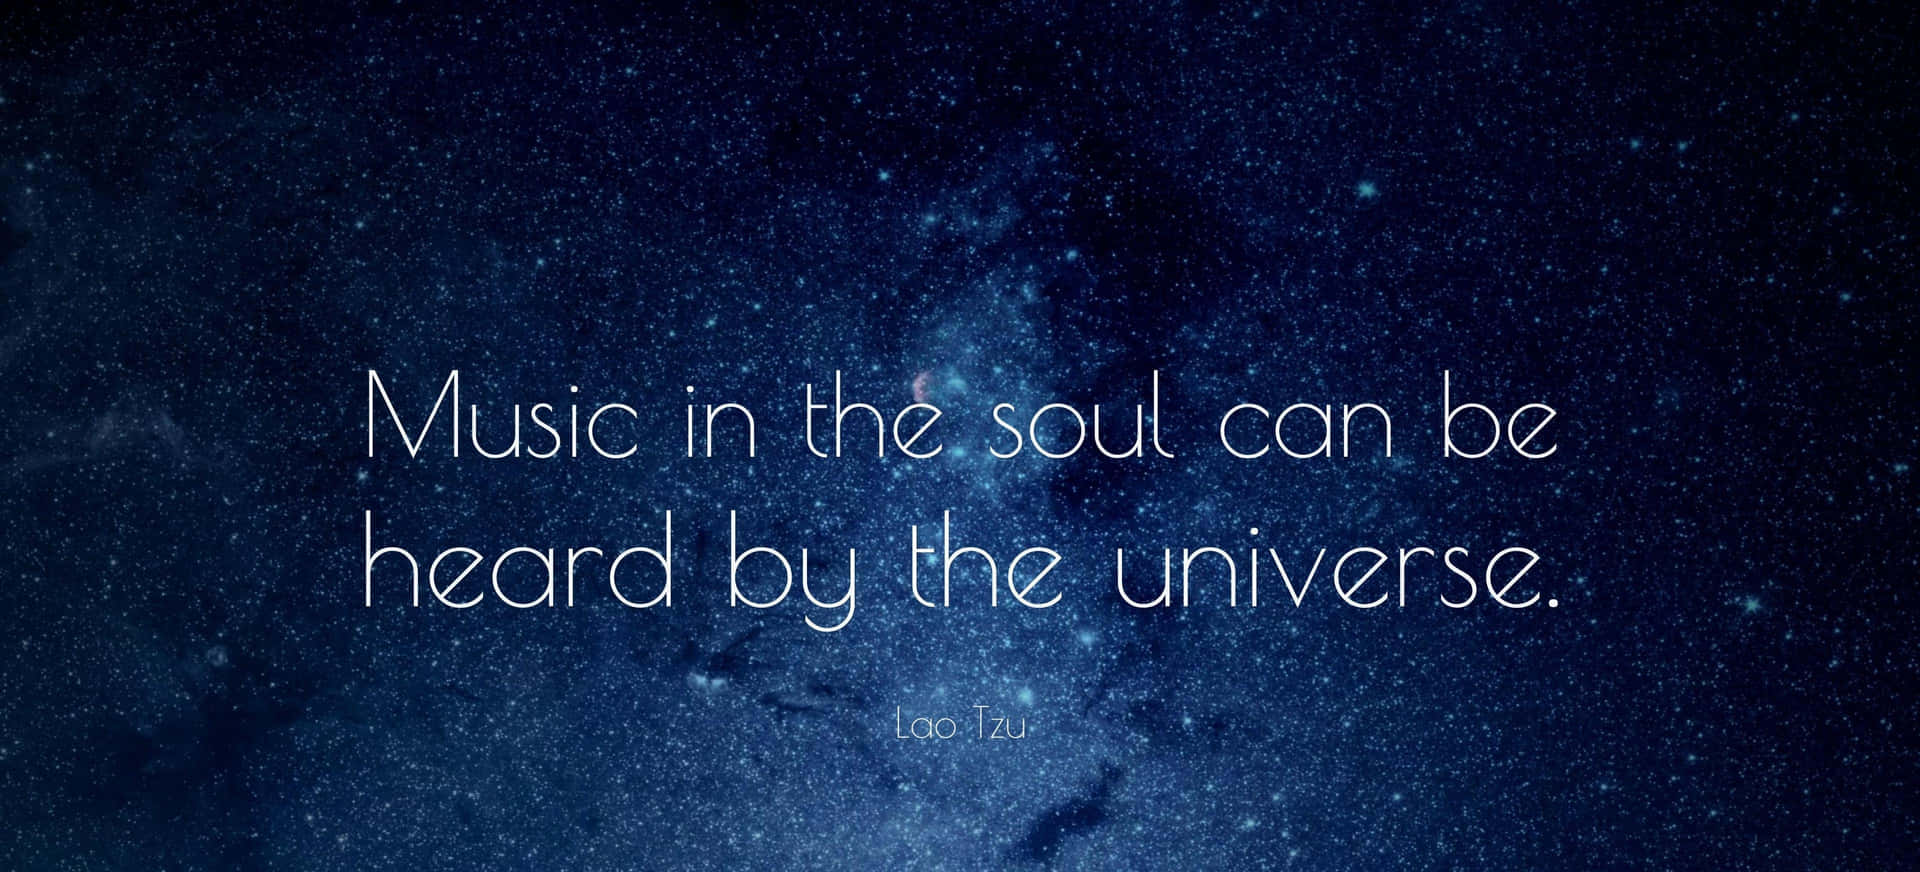 Musik i sjælen kan høres af universet. Wallpaper